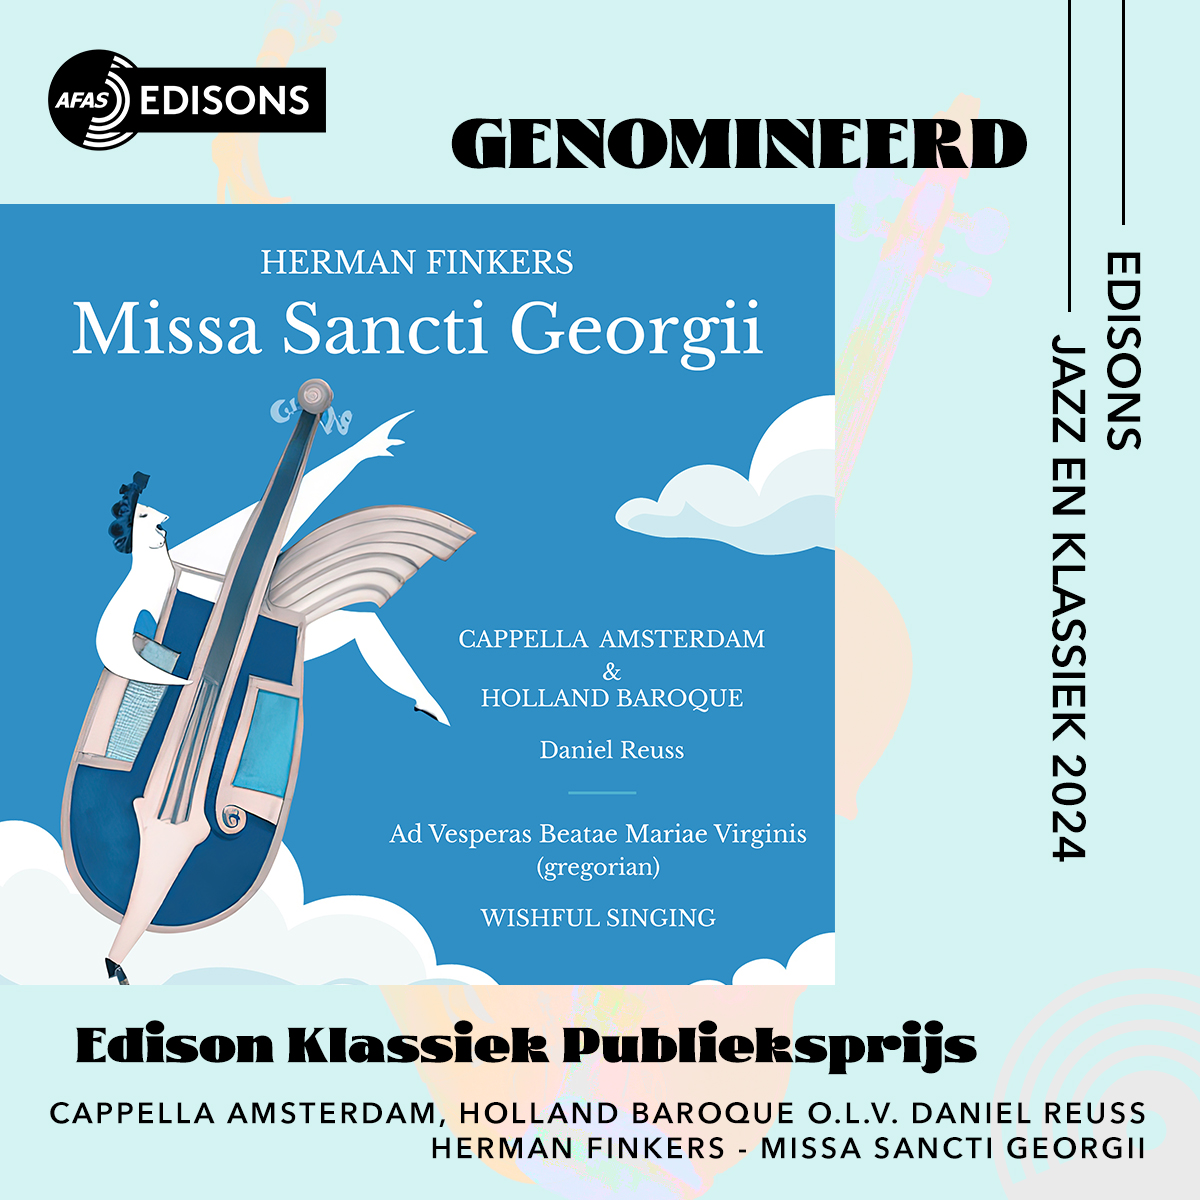 Het album 'Missa Sancti Georgii' is genomineerd voor de Edison Klassiek prijs